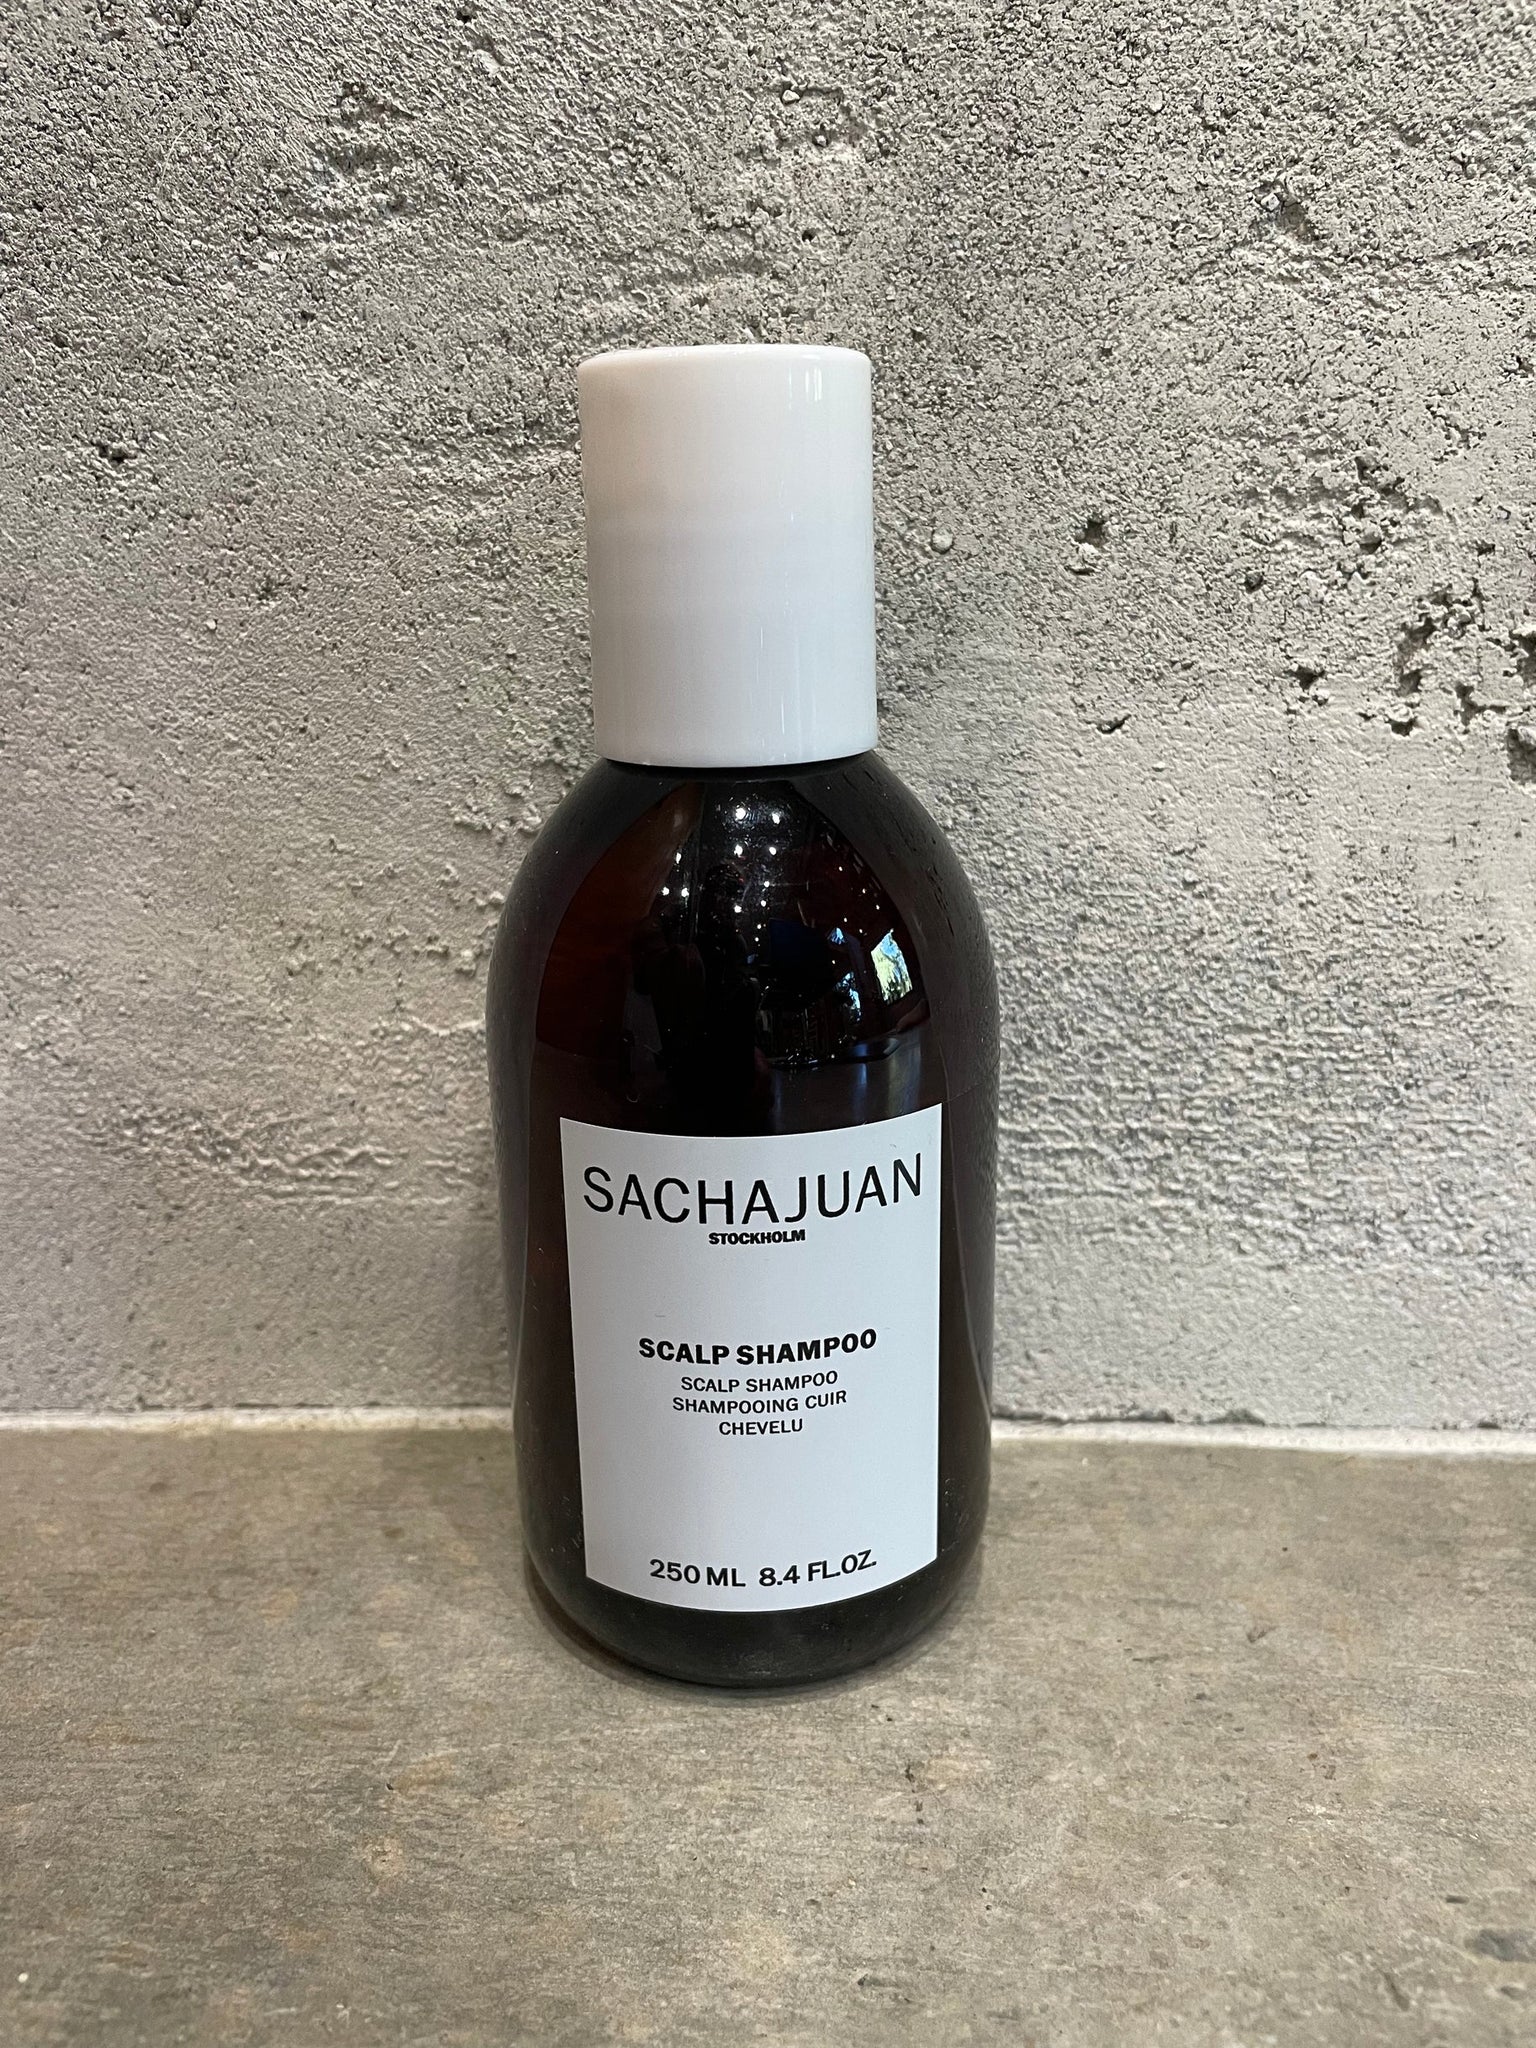 Sachajuan scalp shampoo